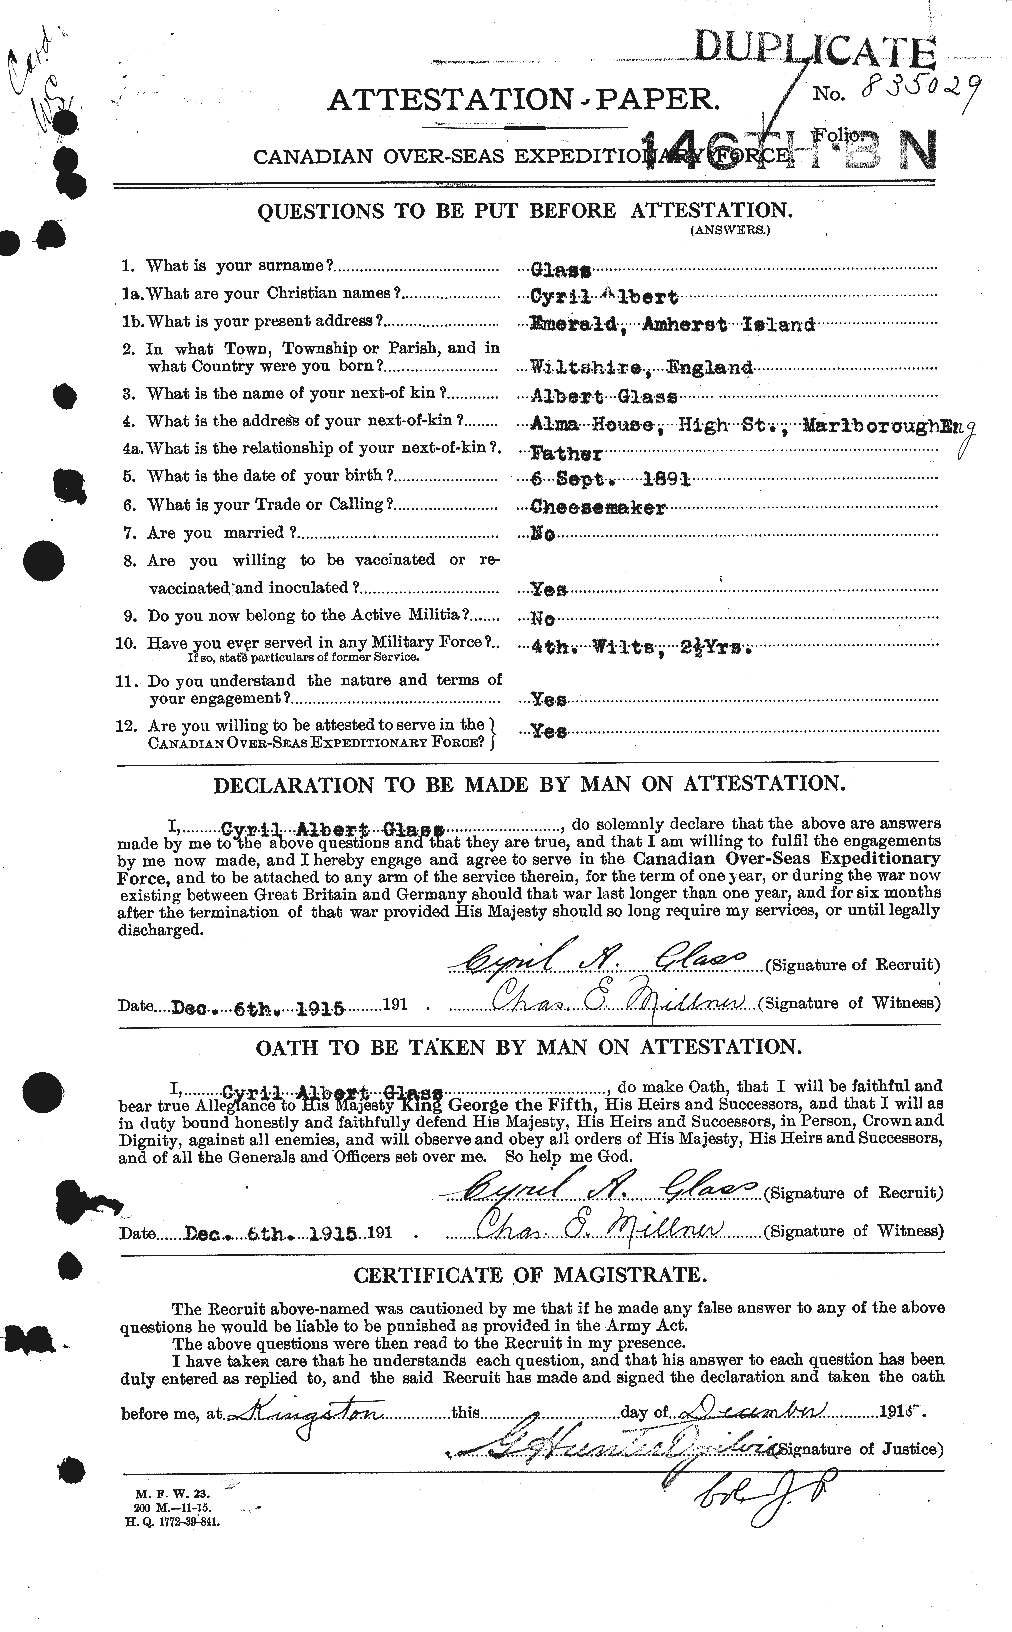 Dossiers du Personnel de la Première Guerre mondiale - CEC 352033a